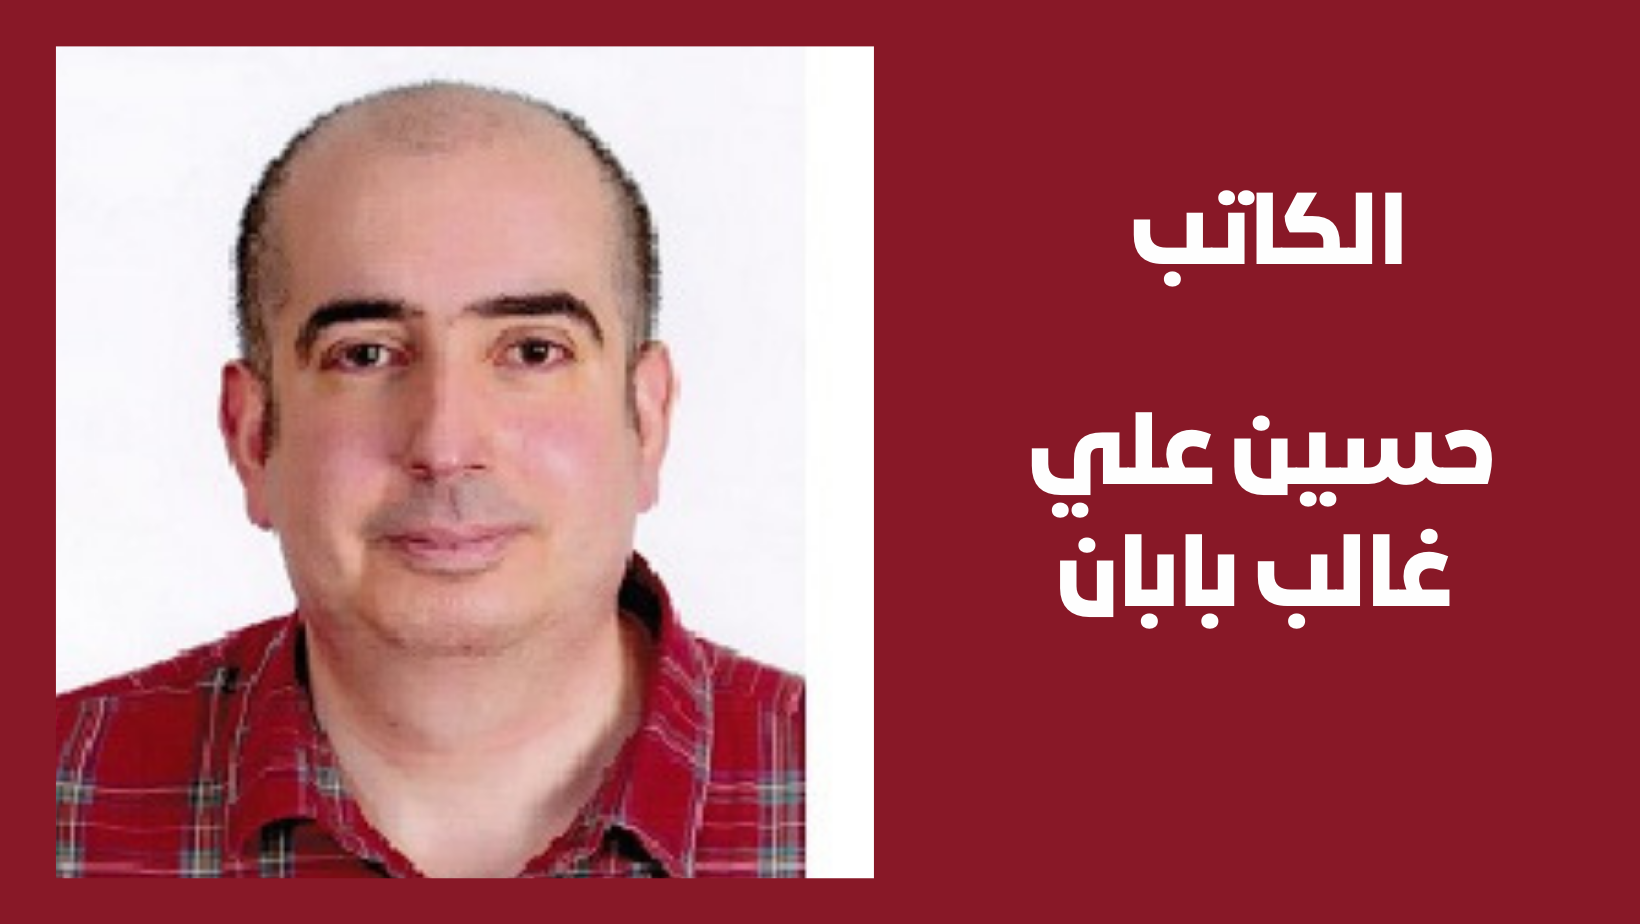 البروفيسور حسين علي غالب بابان